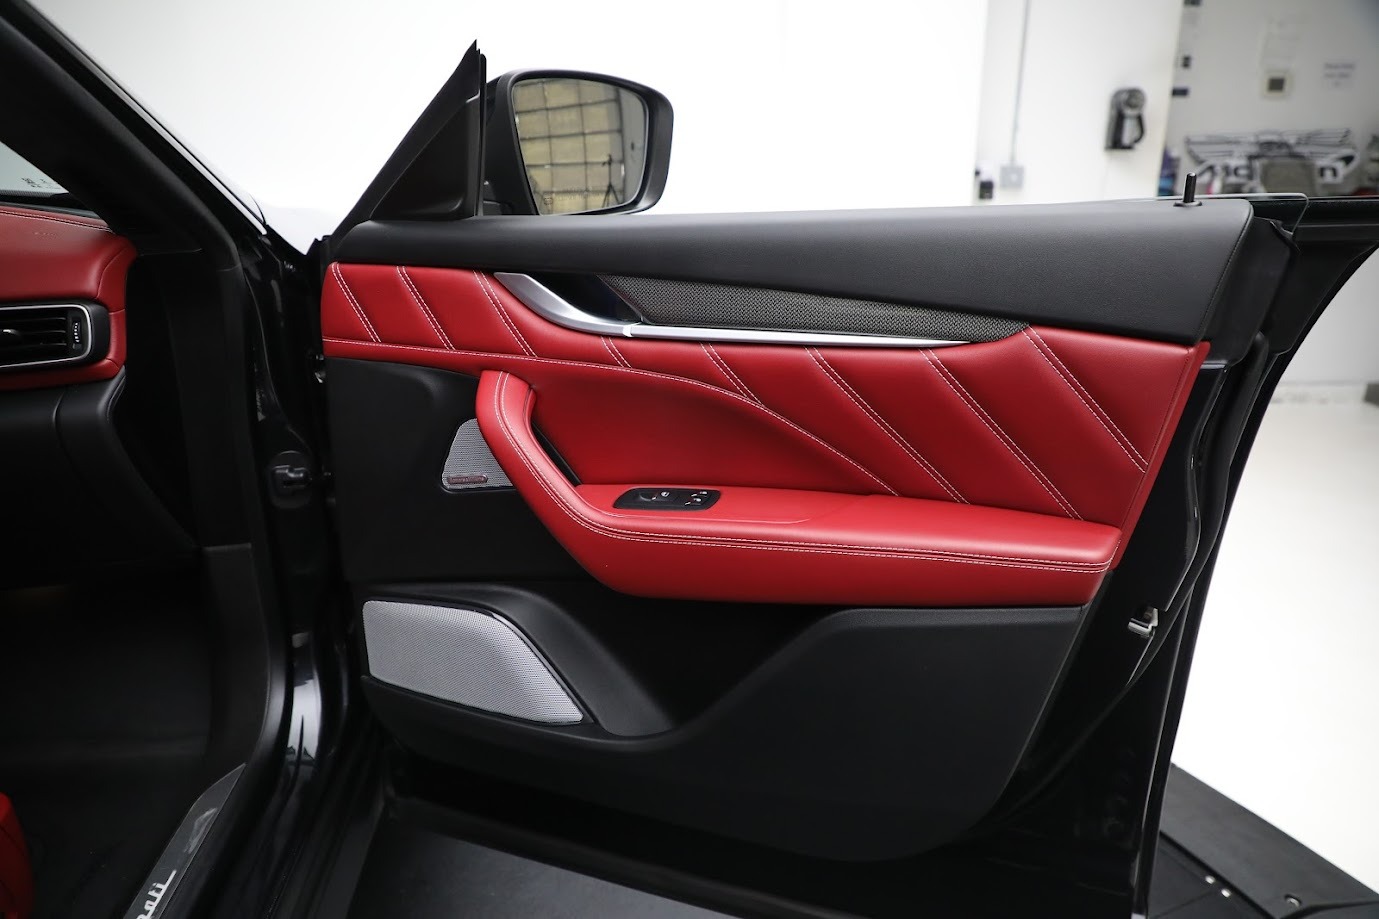 New-2020-Maserati-Levante-GTS